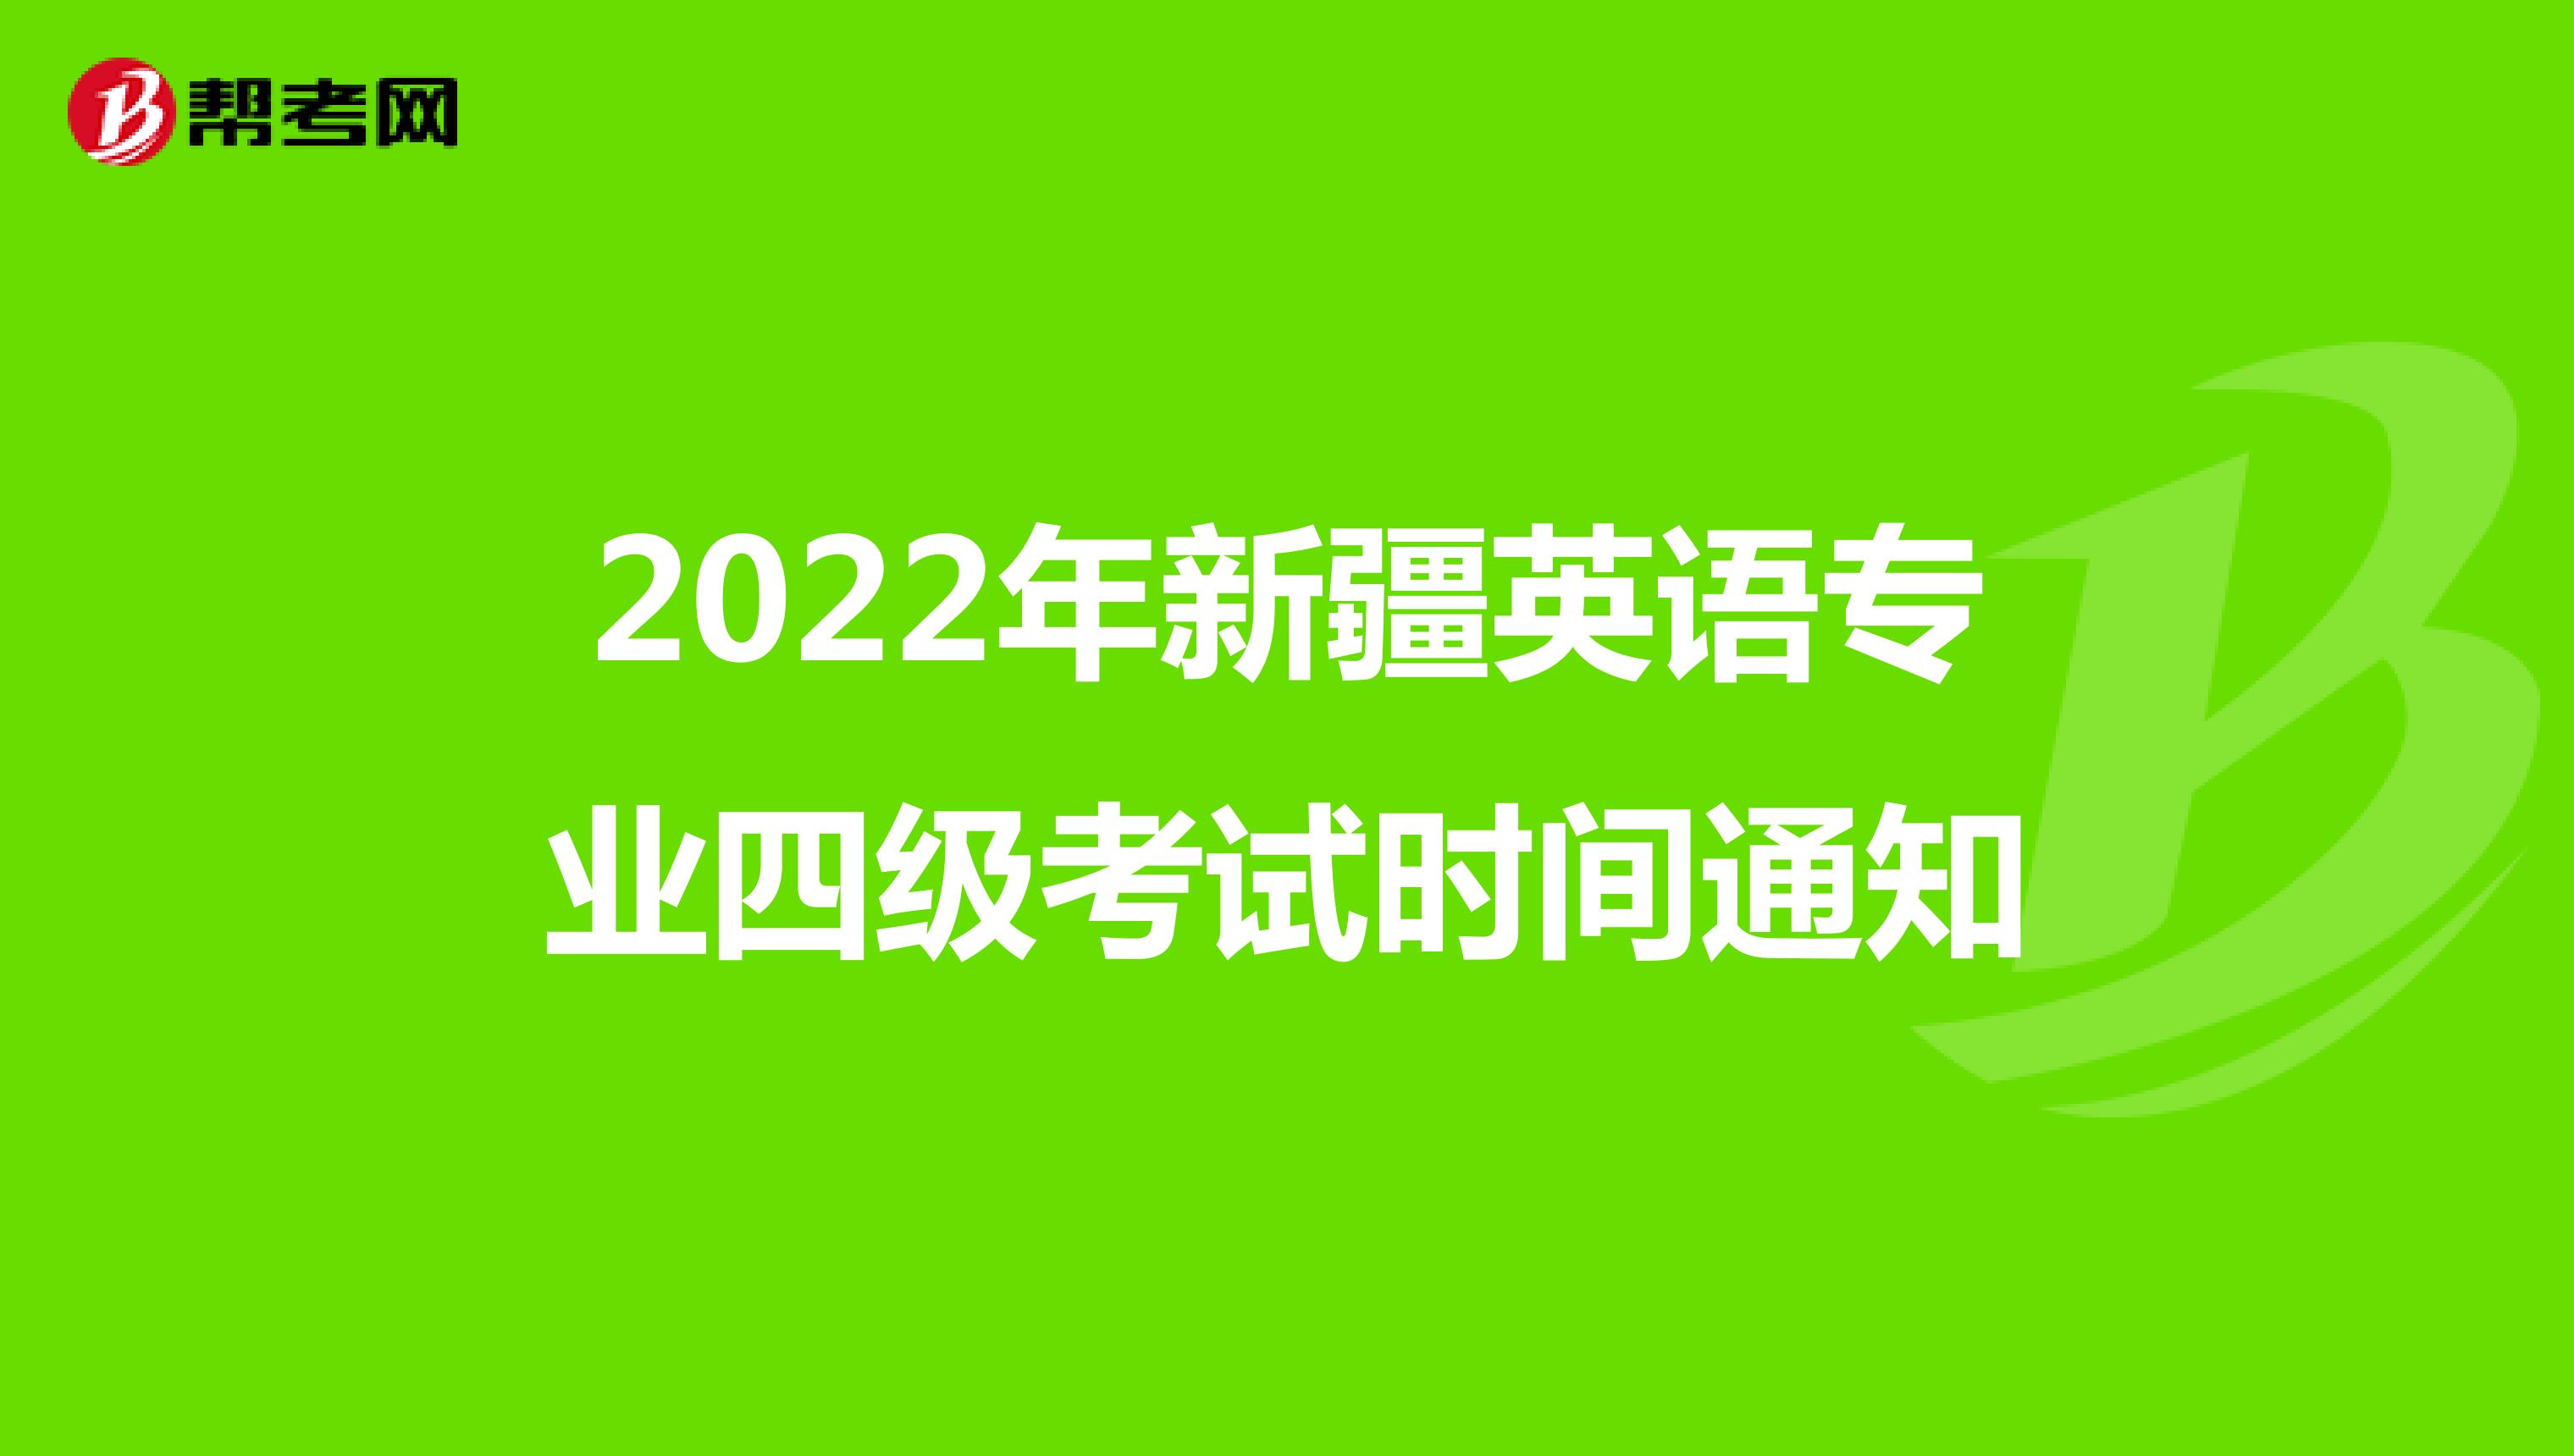 2022年新疆英语专业四级考试时间通知